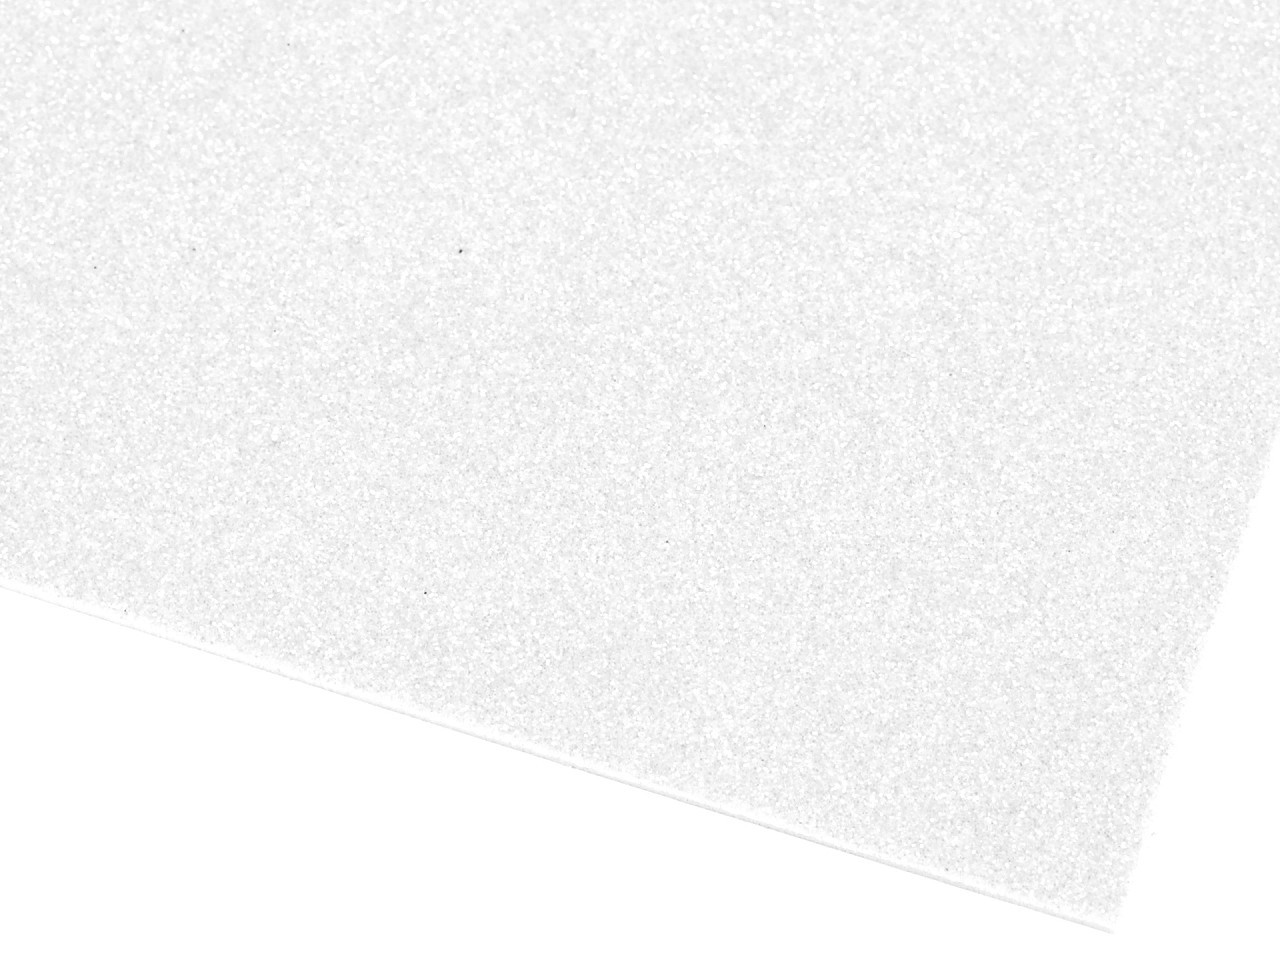 Samolepicí pěnová guma Moosgummi s glitry 20x30 cm, barva 1 bílá